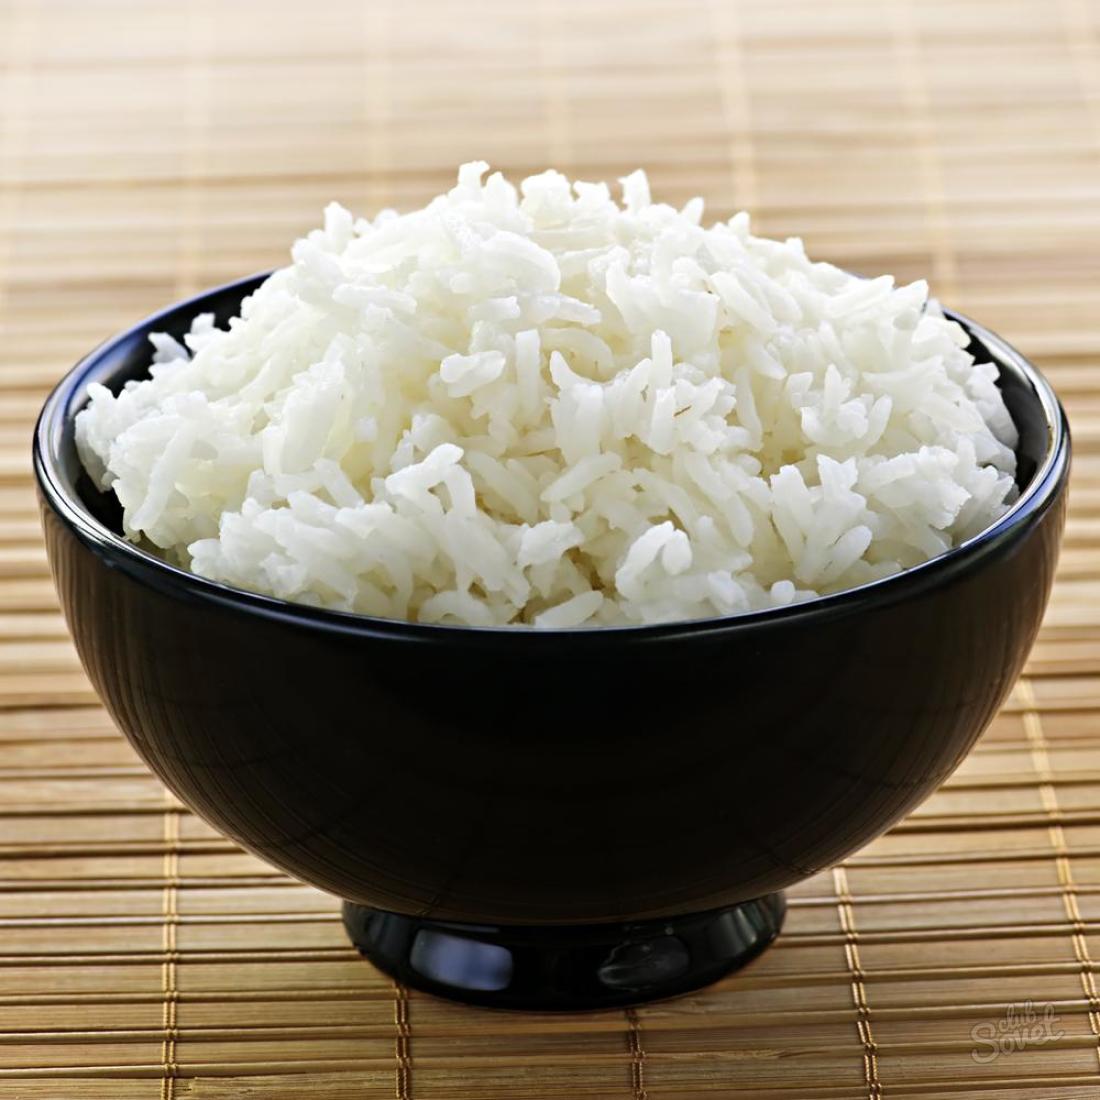 Pirinç nasıl pişirilir ki bu yüzden ufalanır.